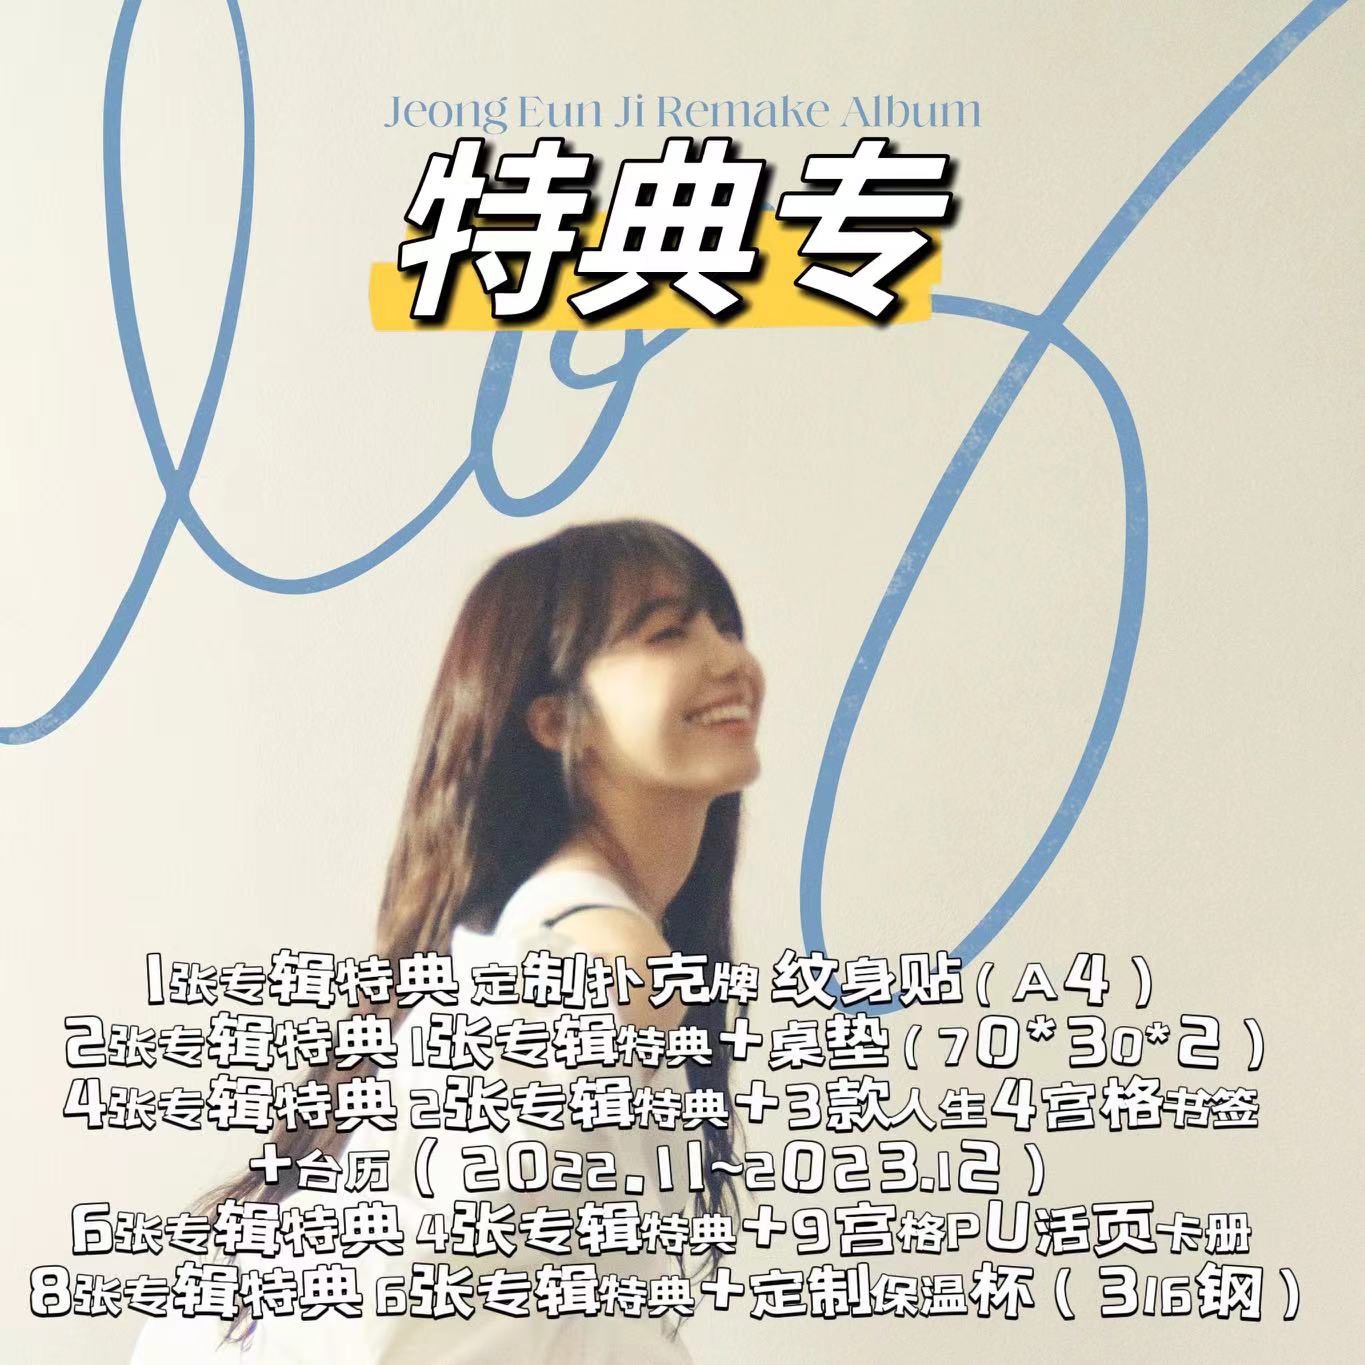 [全款 阶梯特典专][Ktown4u Special Gift] Jeong Eun Ji - Remake Album [log]_郑恩地中文首站